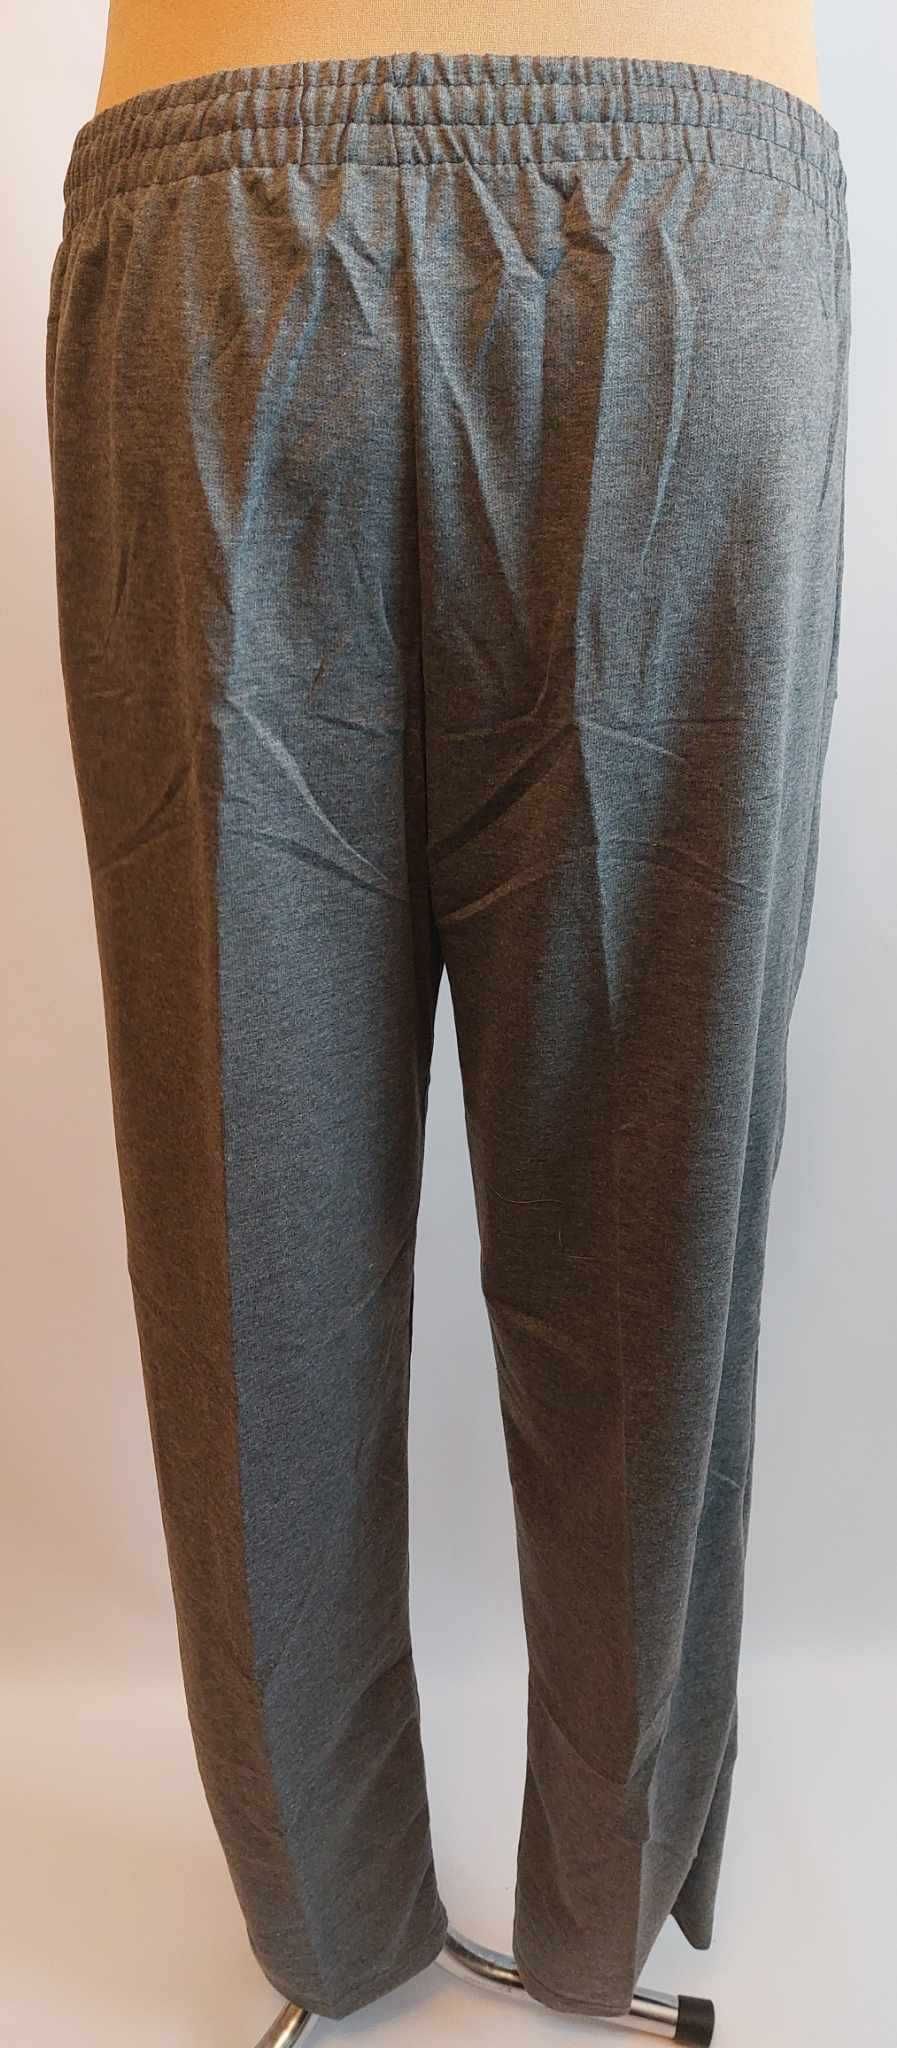 Spodnie męskie dresowe szare bez ściągaczy LINTEBOB Y-47169-LK r. 4 XL